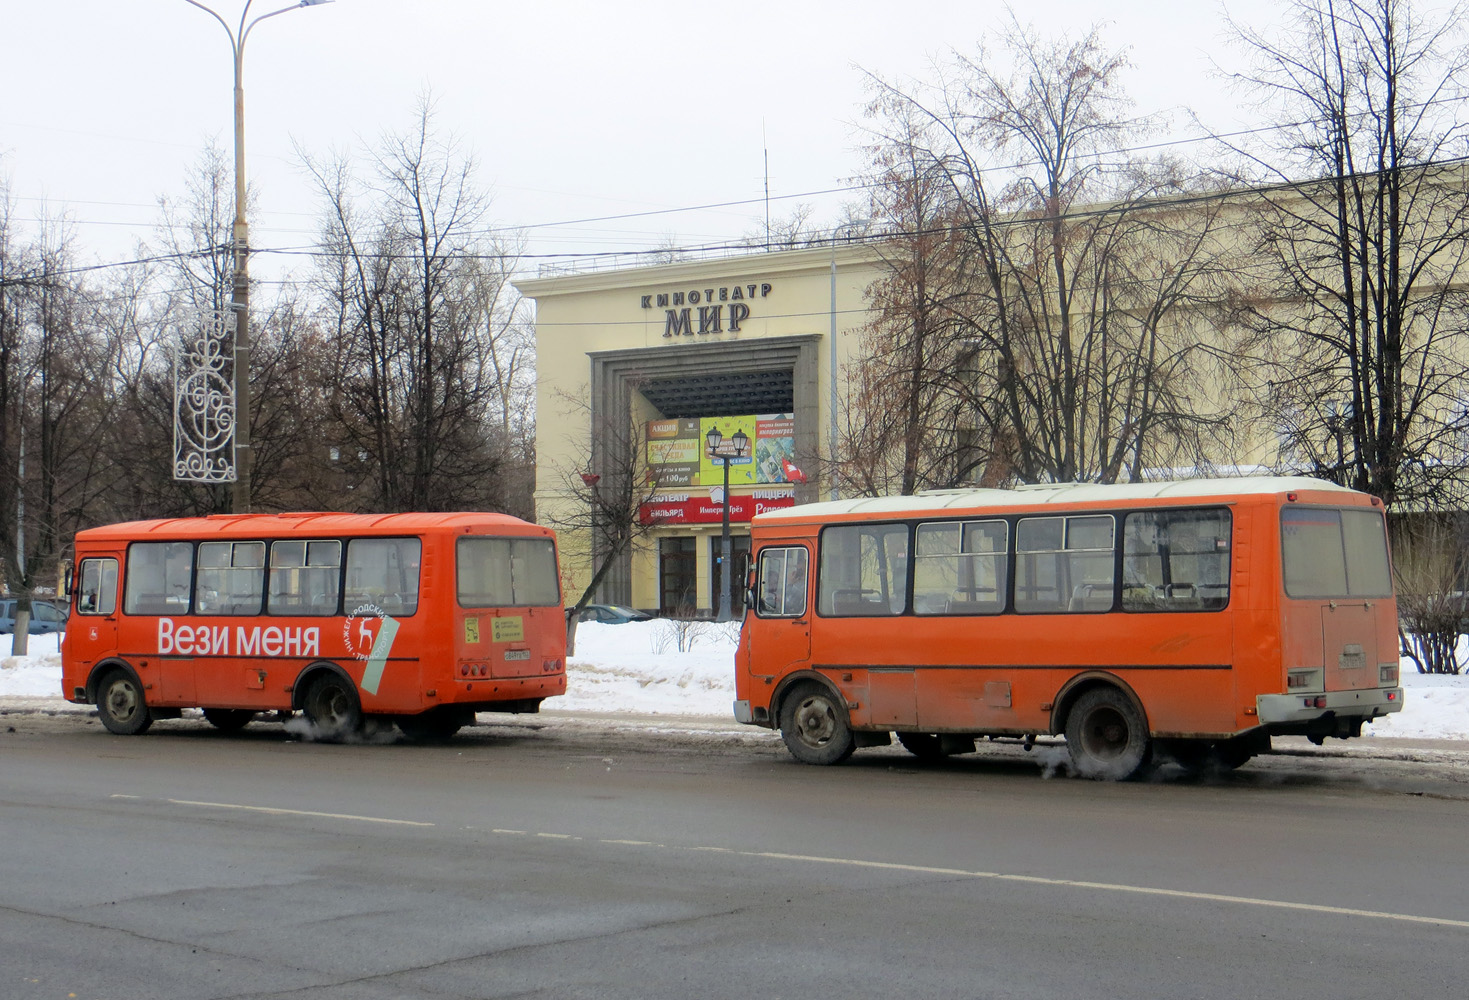 Nizhegorodskaya region, PAZ-32054 Nr. О 849 ТВ 152; Nizhegorodskaya region, PAZ-32054 Nr. Н 821 ЕТ 152; Nizhegorodskaya region — Bus stations, End Stations